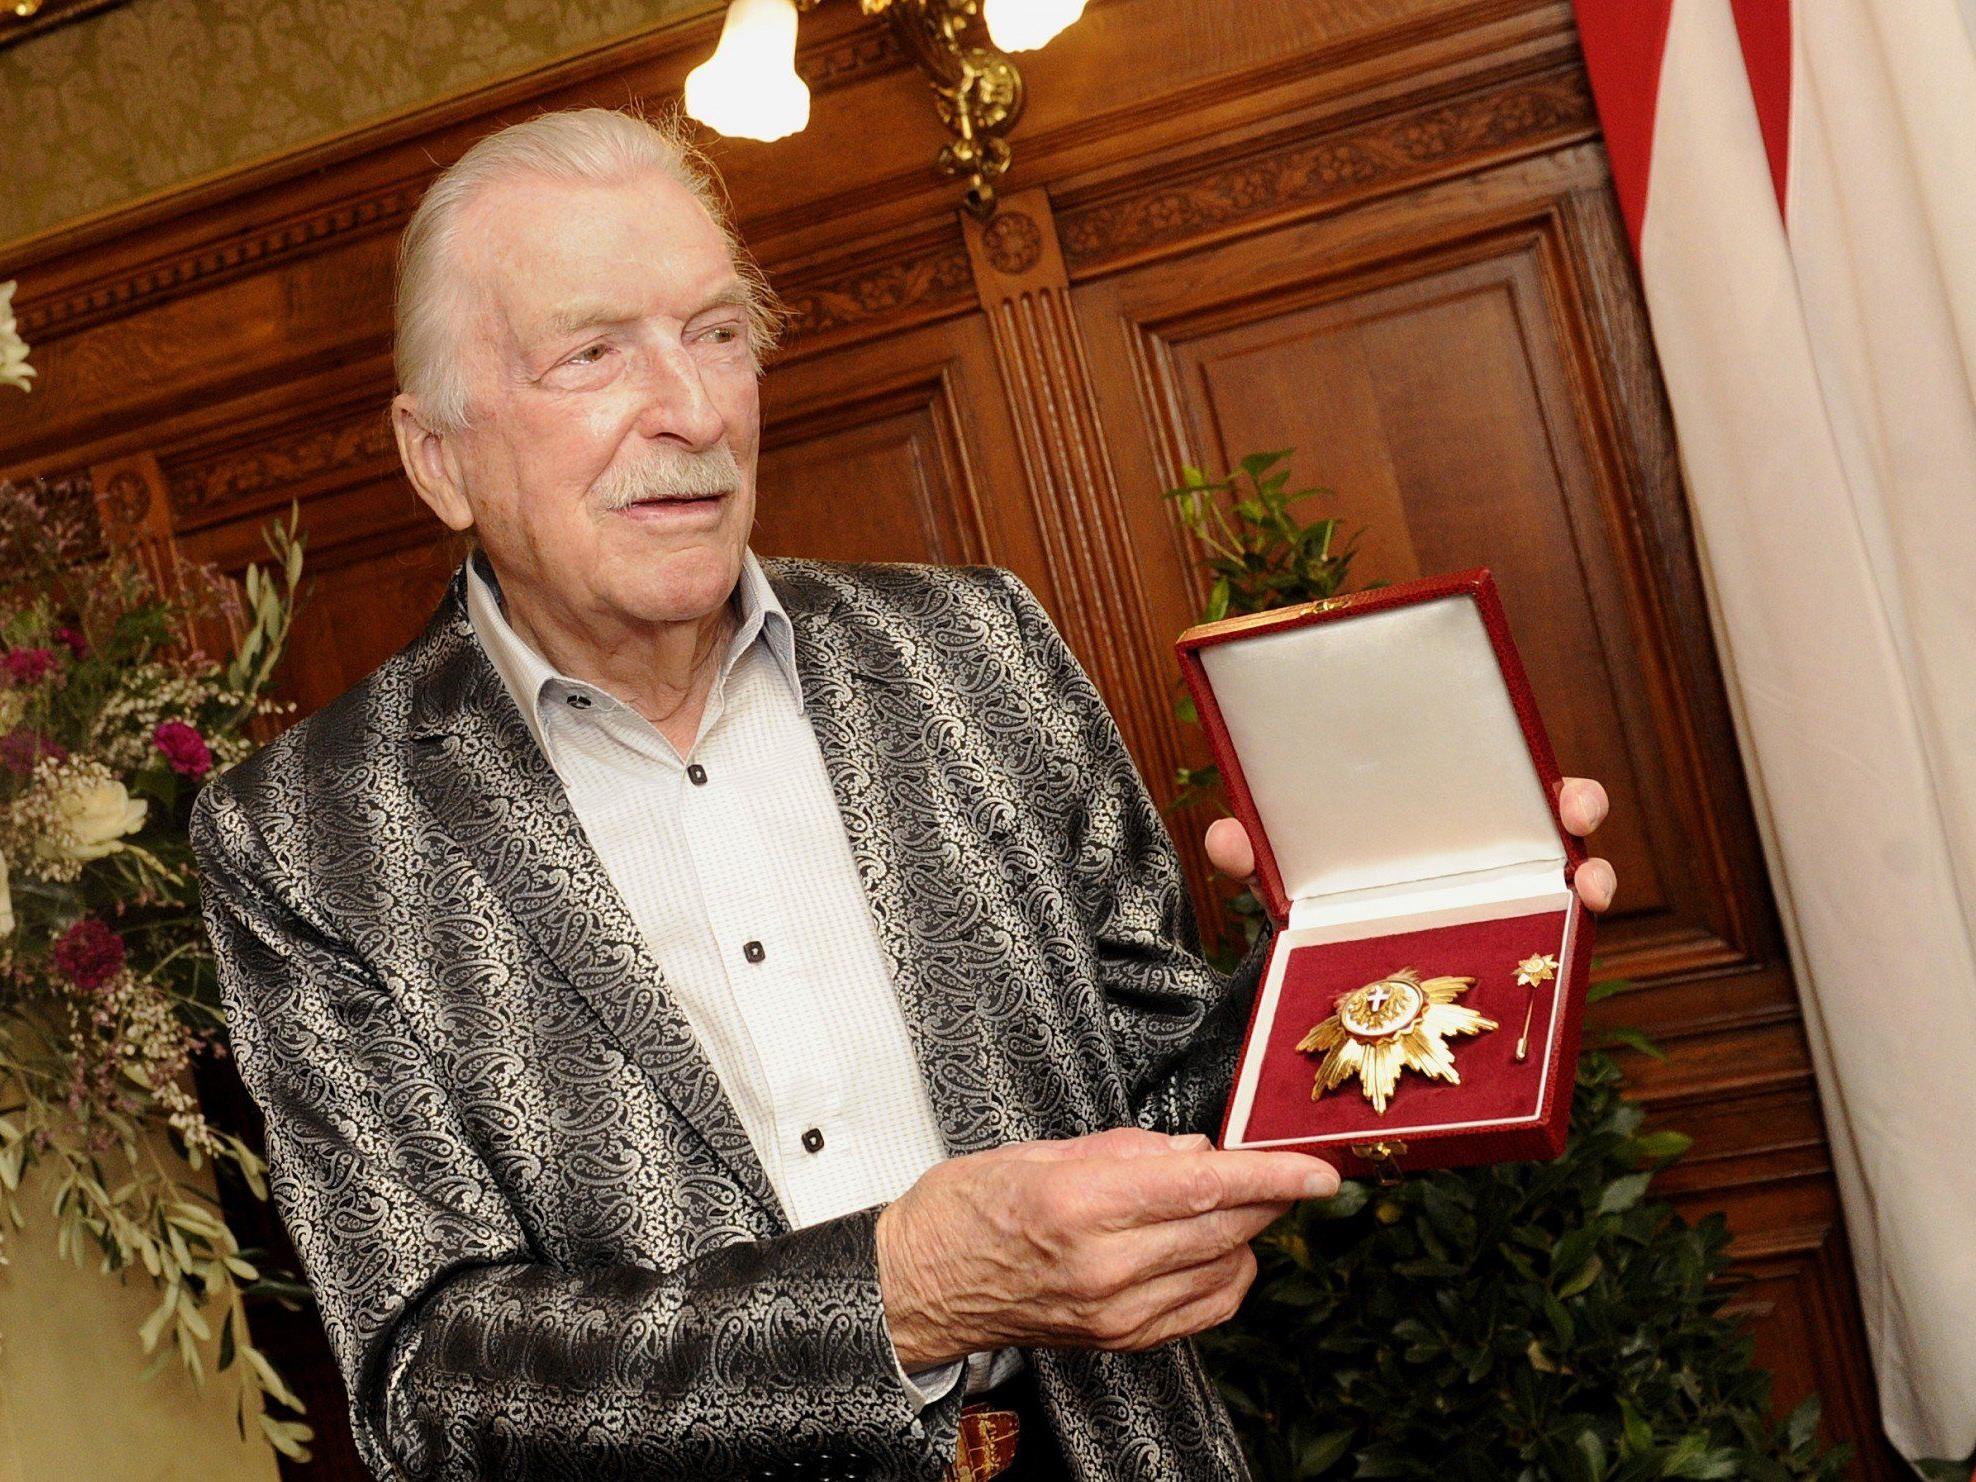 James Last am Montag, 08. April 2013, anl. der Überreichung des Großen Goldenen Ehrenzeichens für Verdienste um das Land Wien.